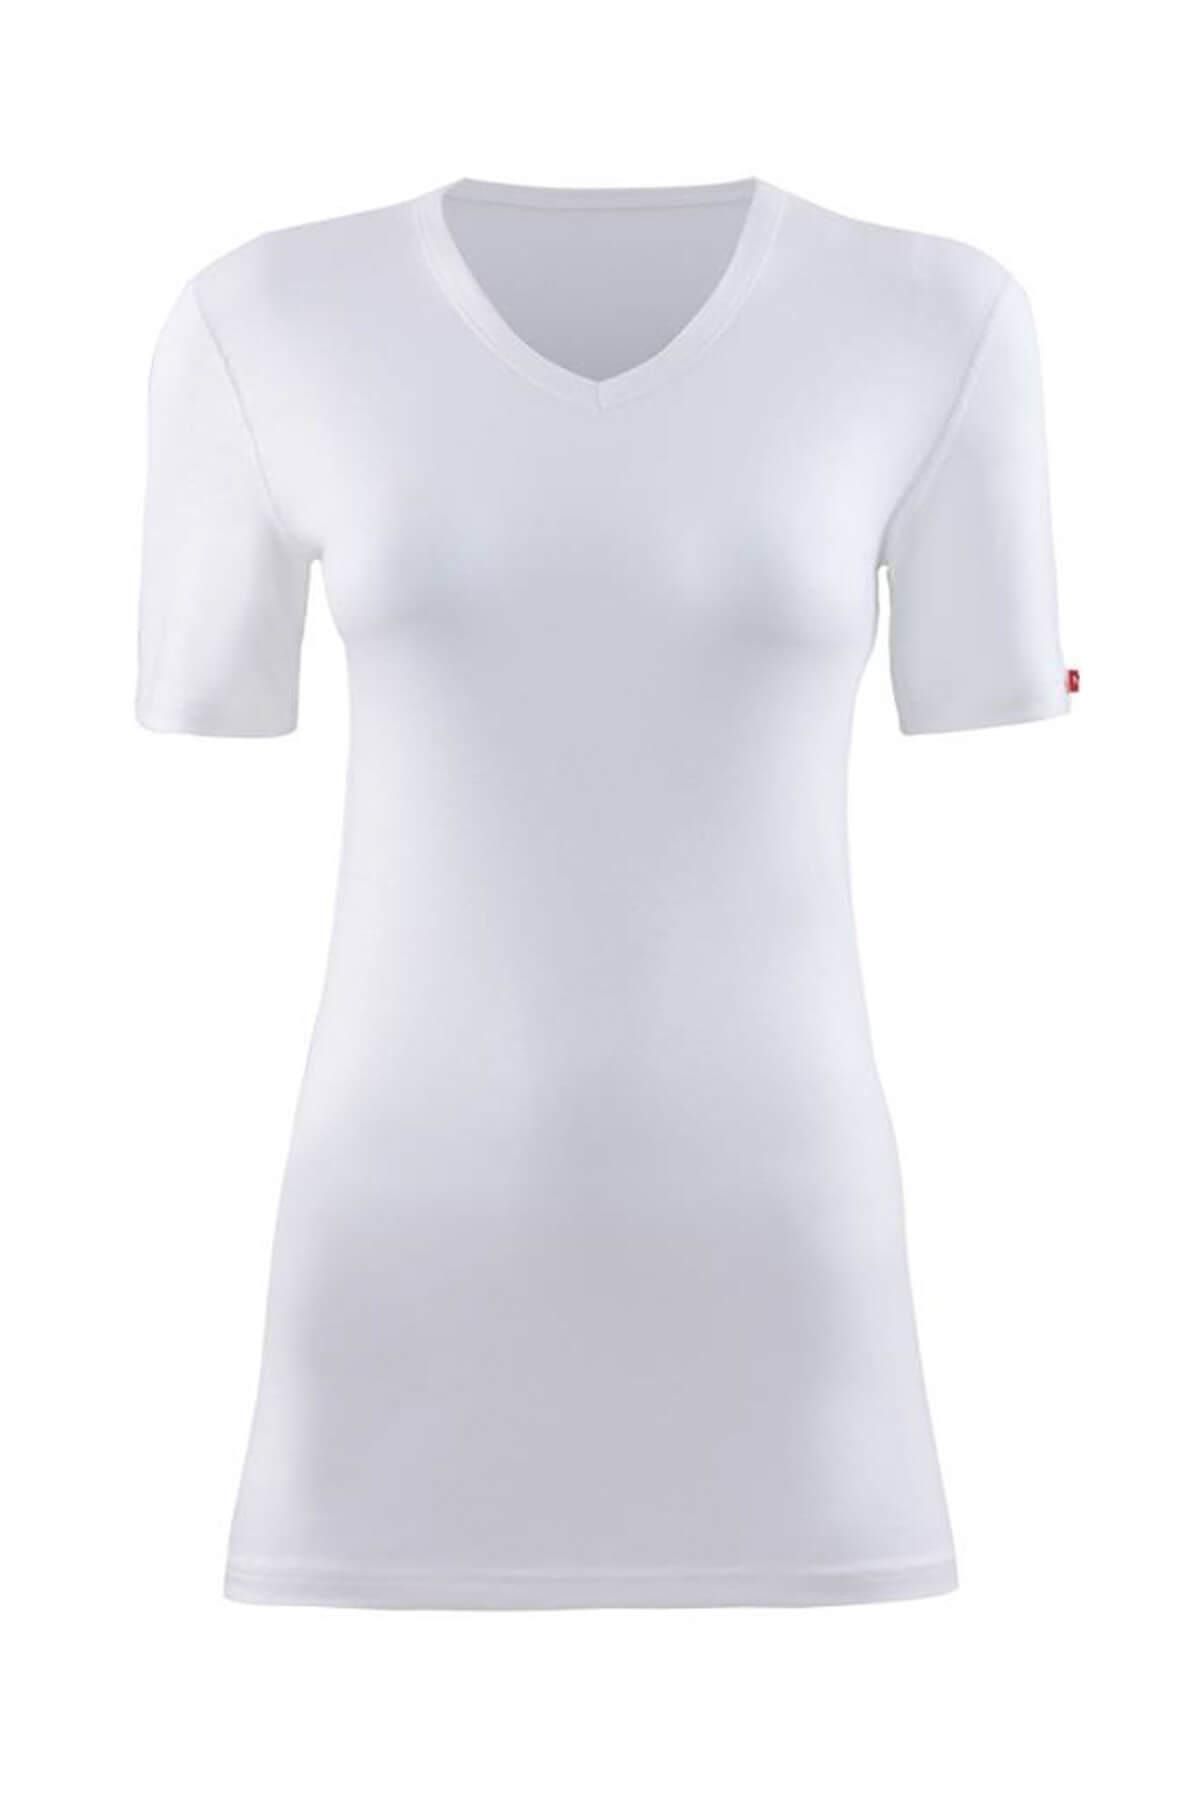 Blackspade Kadın Kar Beyaz 2. Seviye Termal T-shirt 1263